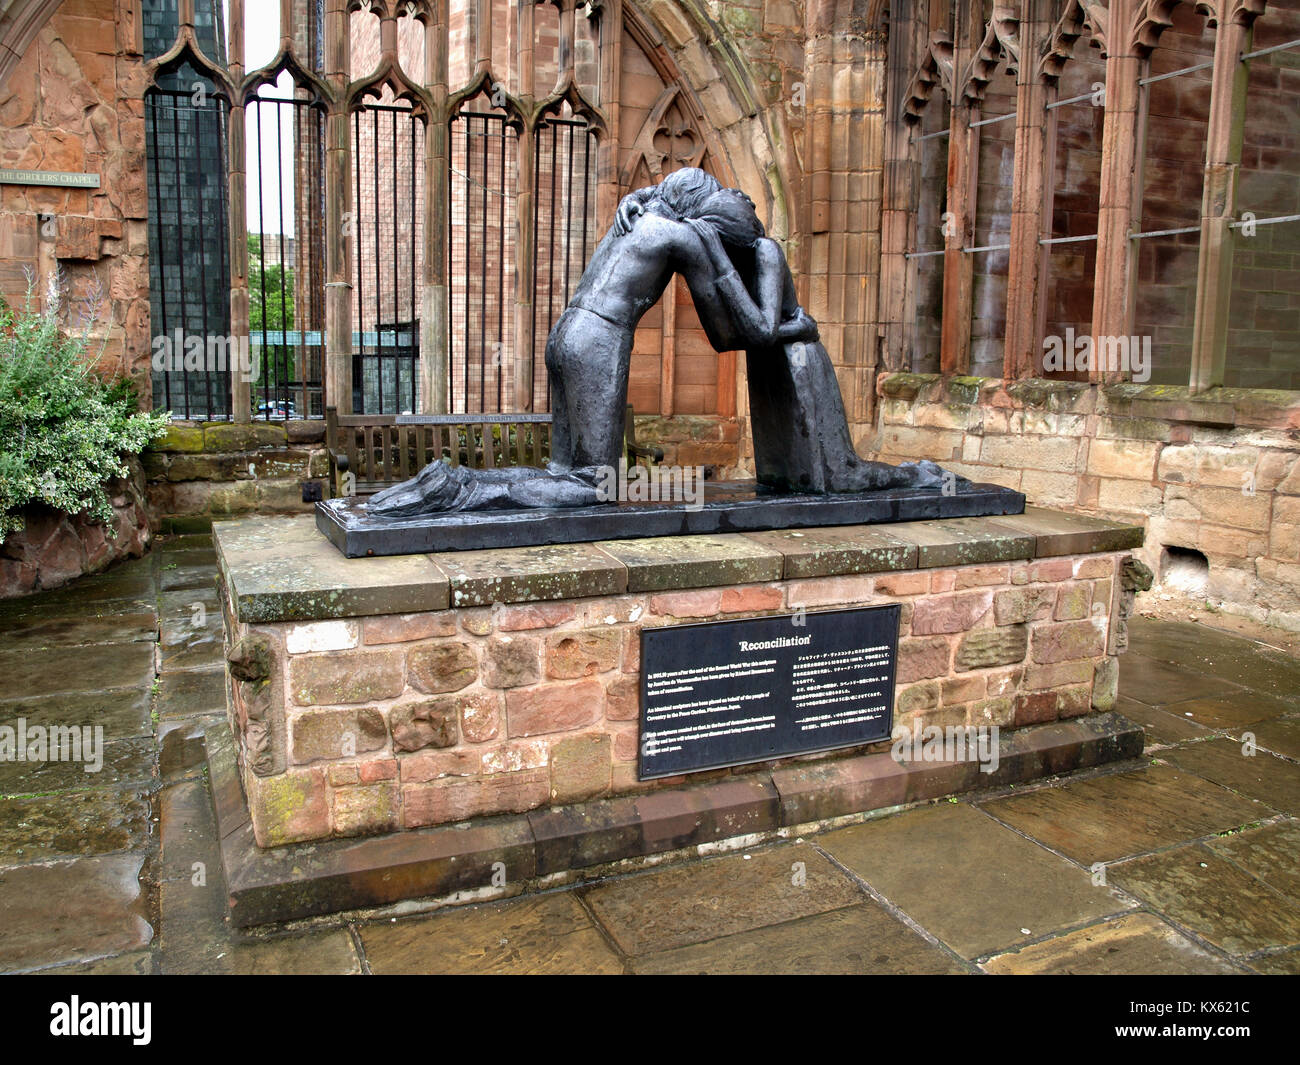 Reconcilliation Statue von Sir Richard Branson in der Kathedrale von Coventry, Coventry, West Midlands, England, Großbritannien gespendet Stockfoto